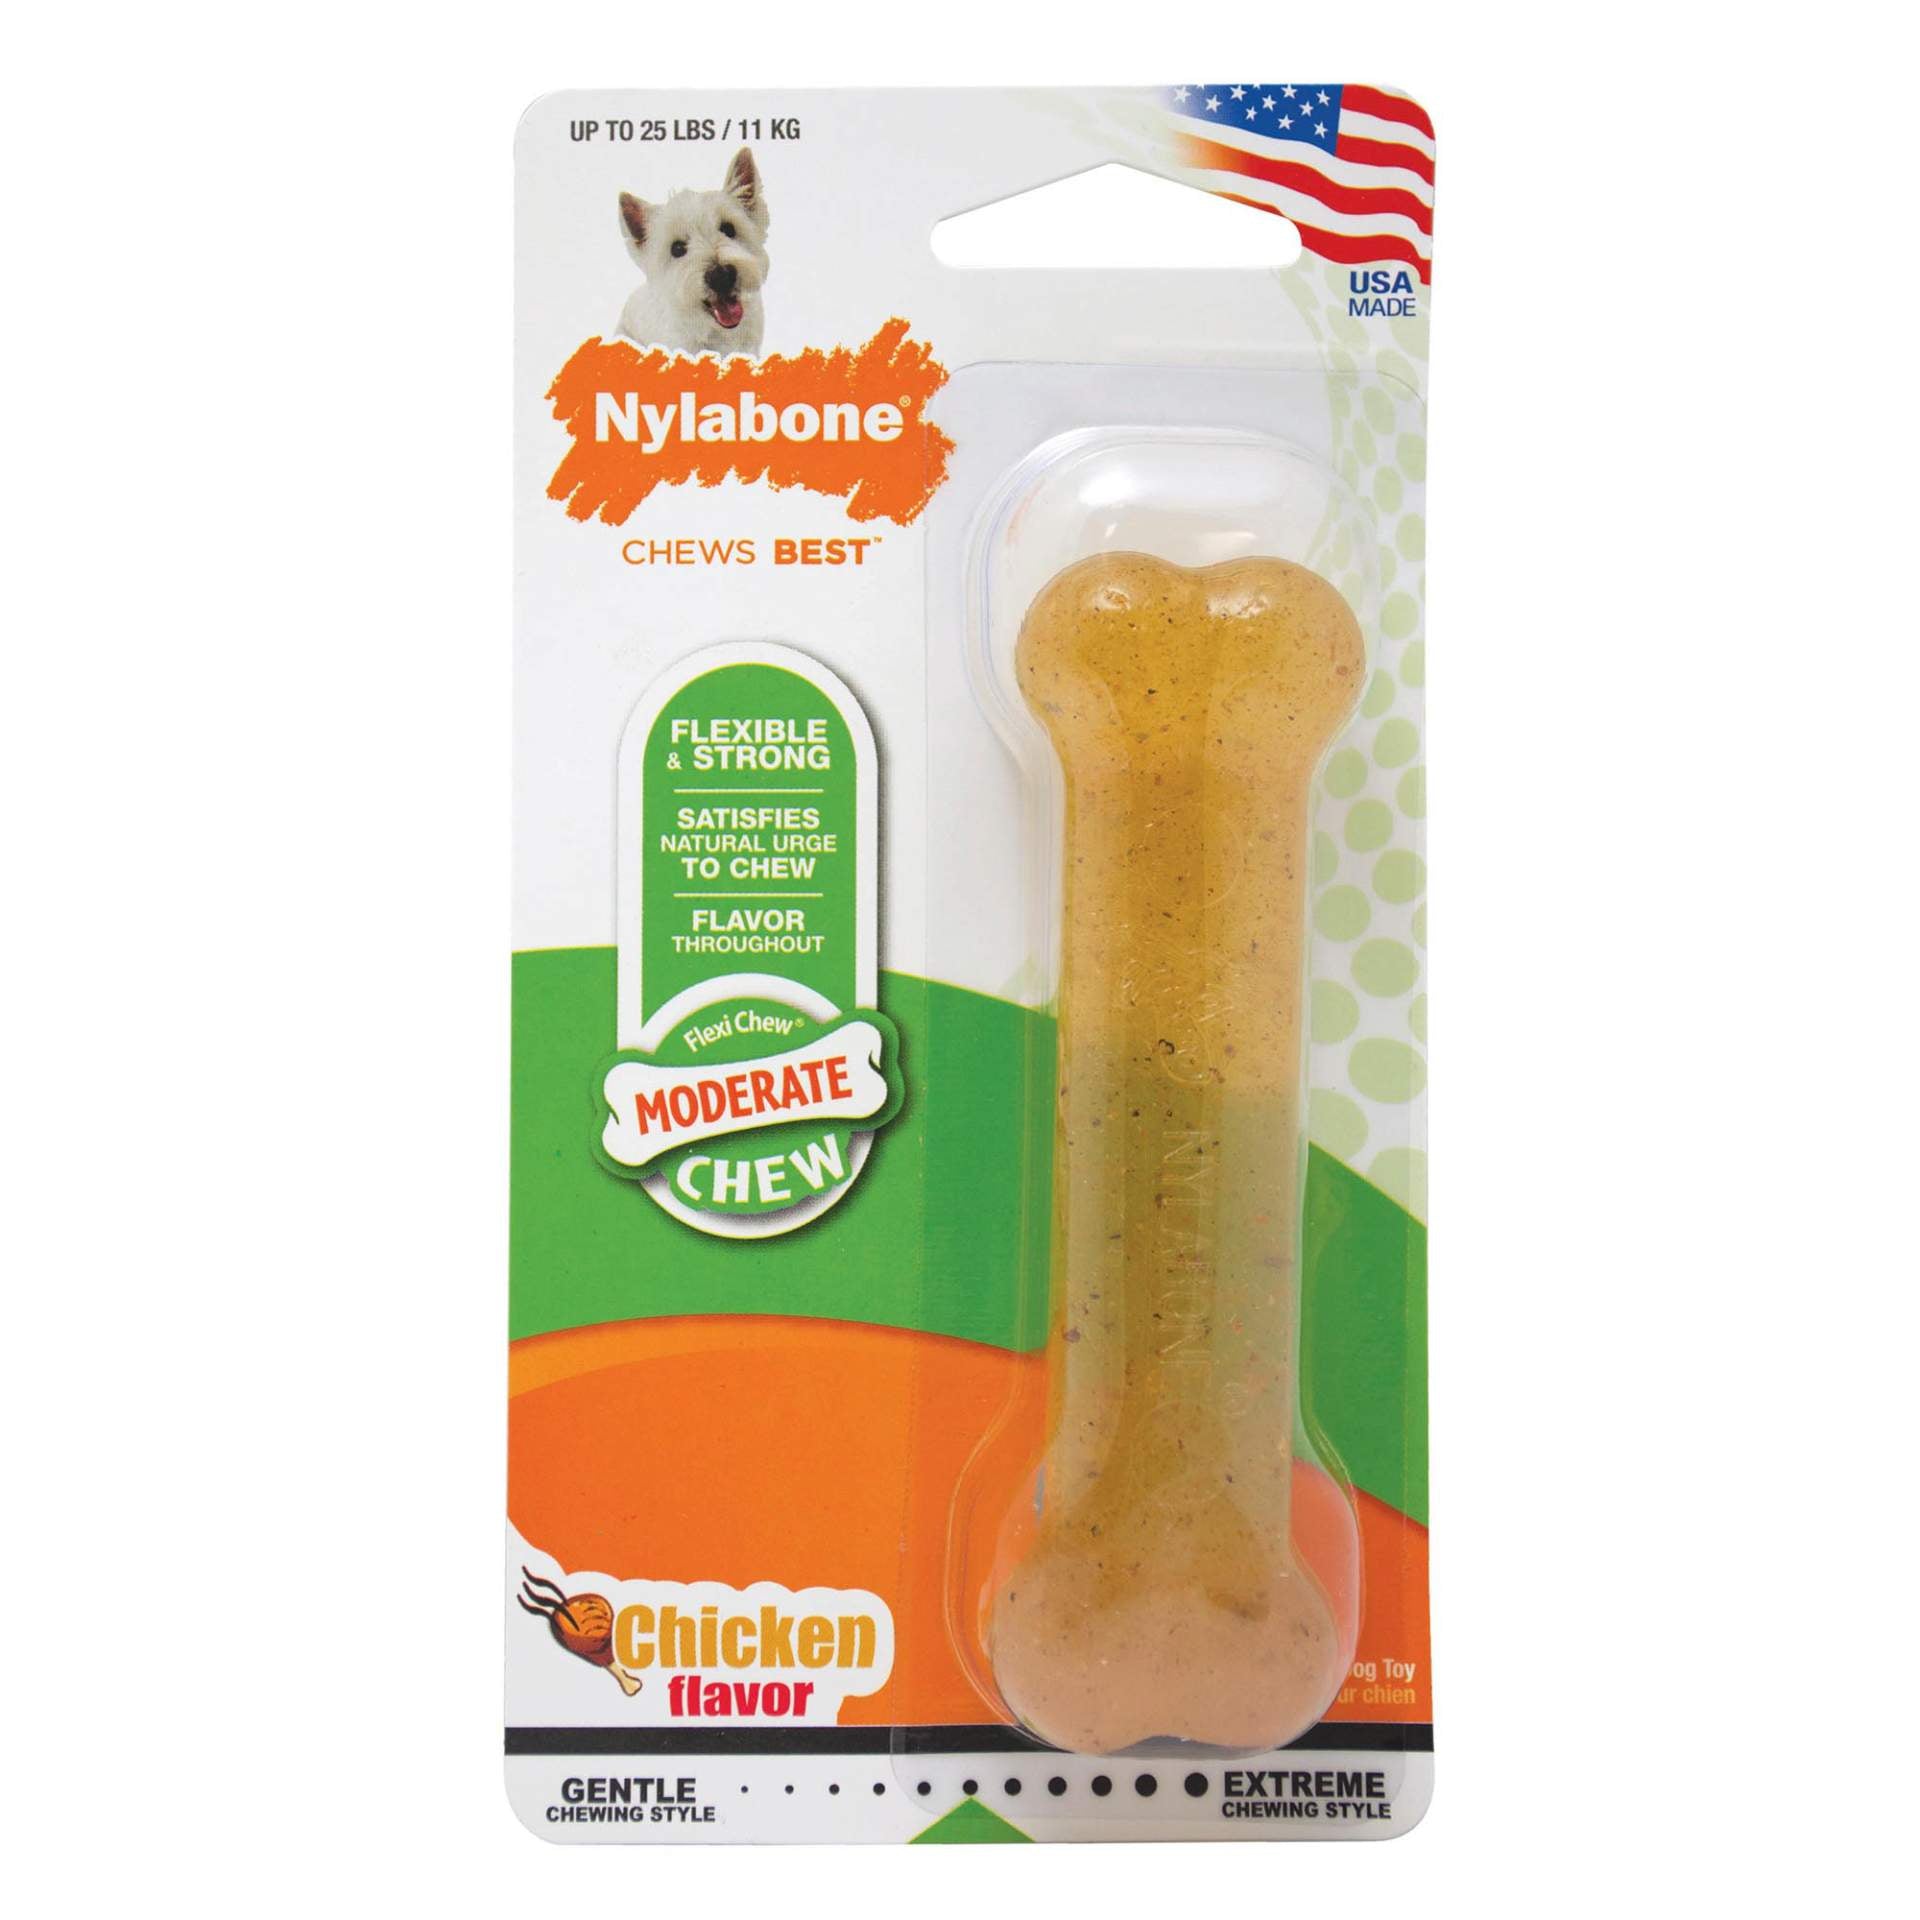 Nylabone Moderate Chew Dog Chew Toy - Chicken Flavor